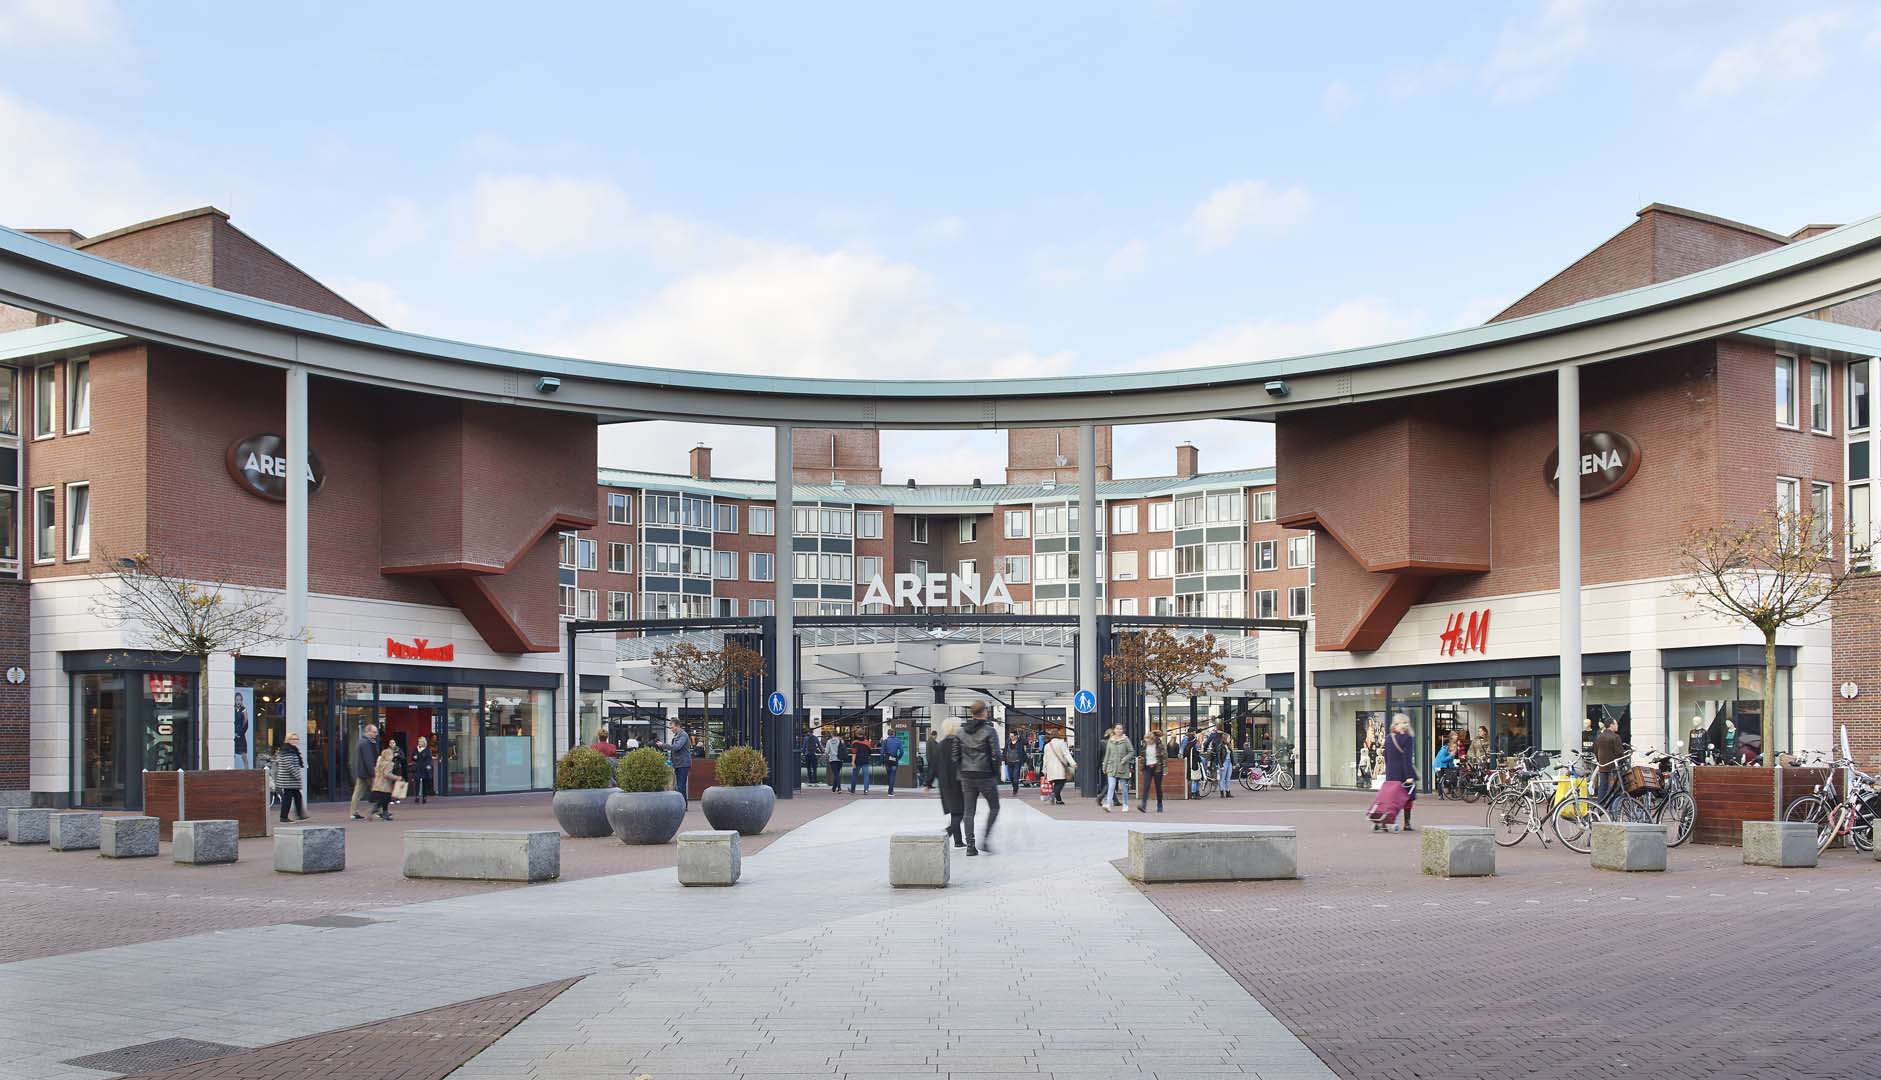 Project: Winkelcentrum Arena ’s-Hertogenbosch